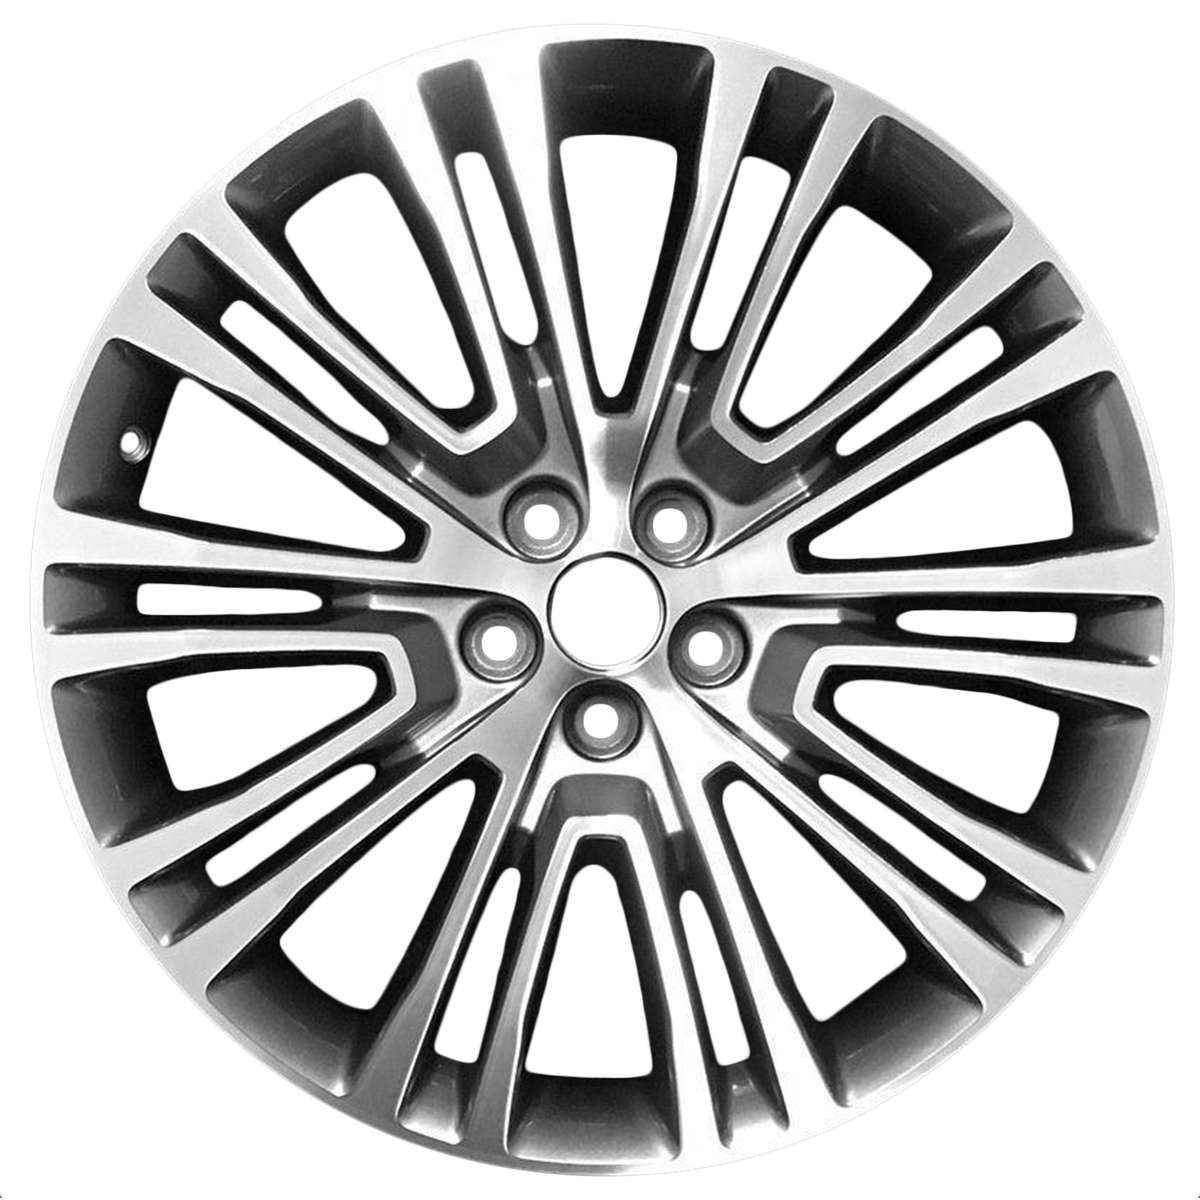 2017 Lincoln MKX 20" OEM Wheel Rim W10075MC